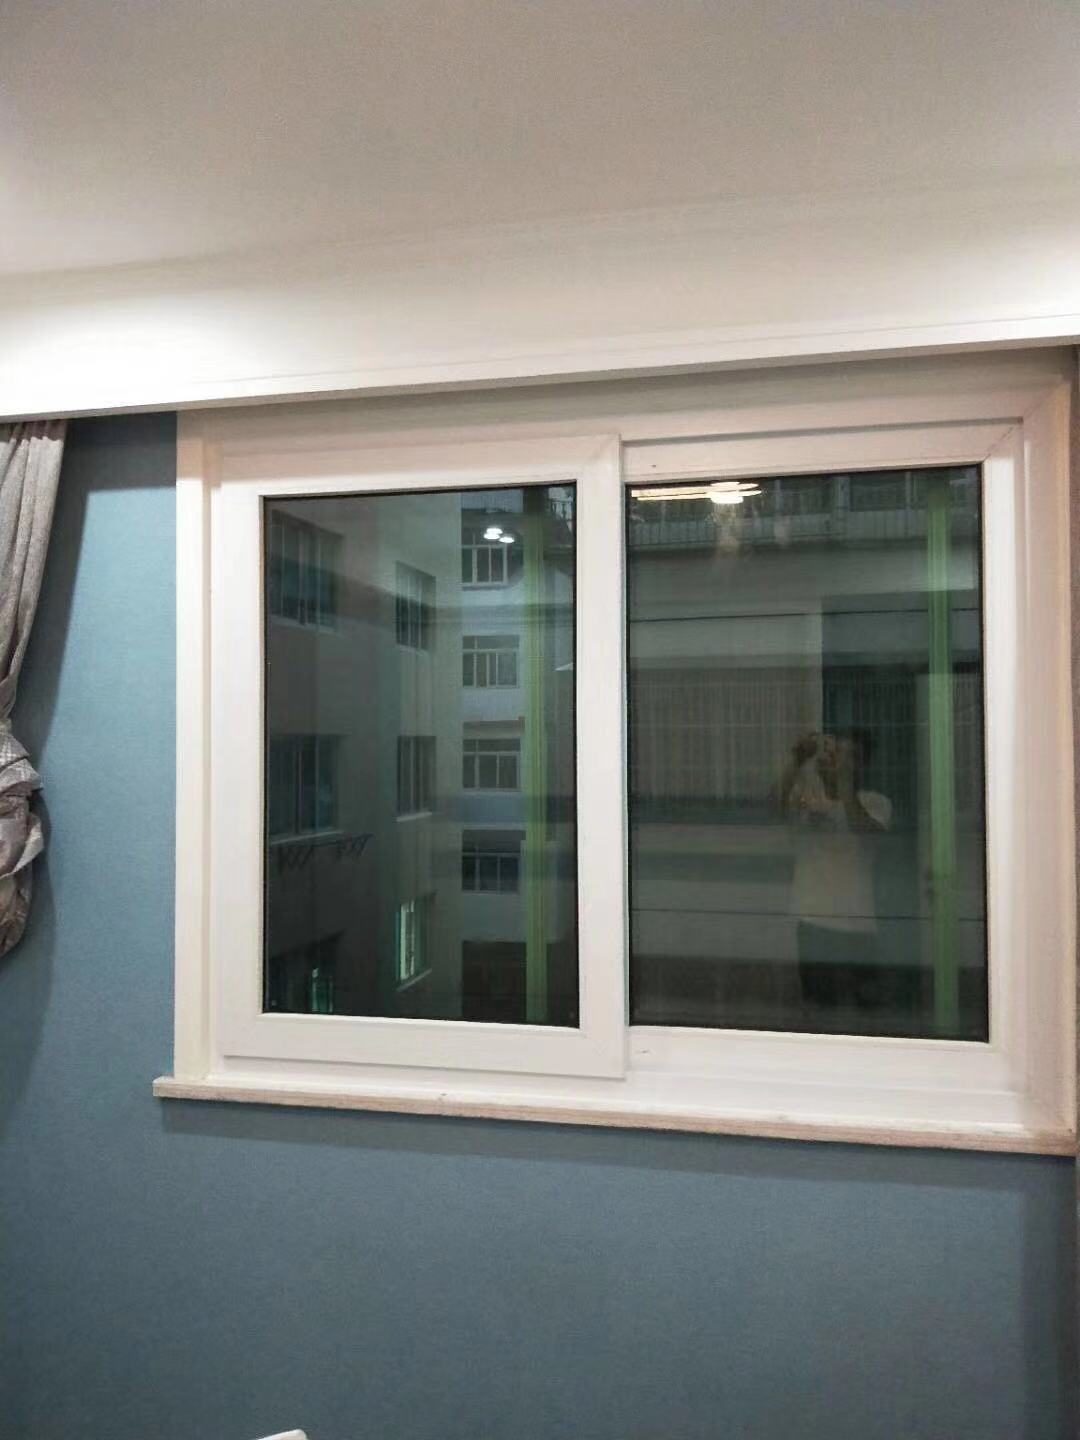 西安静立方隔音窗治理居民楼的低频噪音的图片